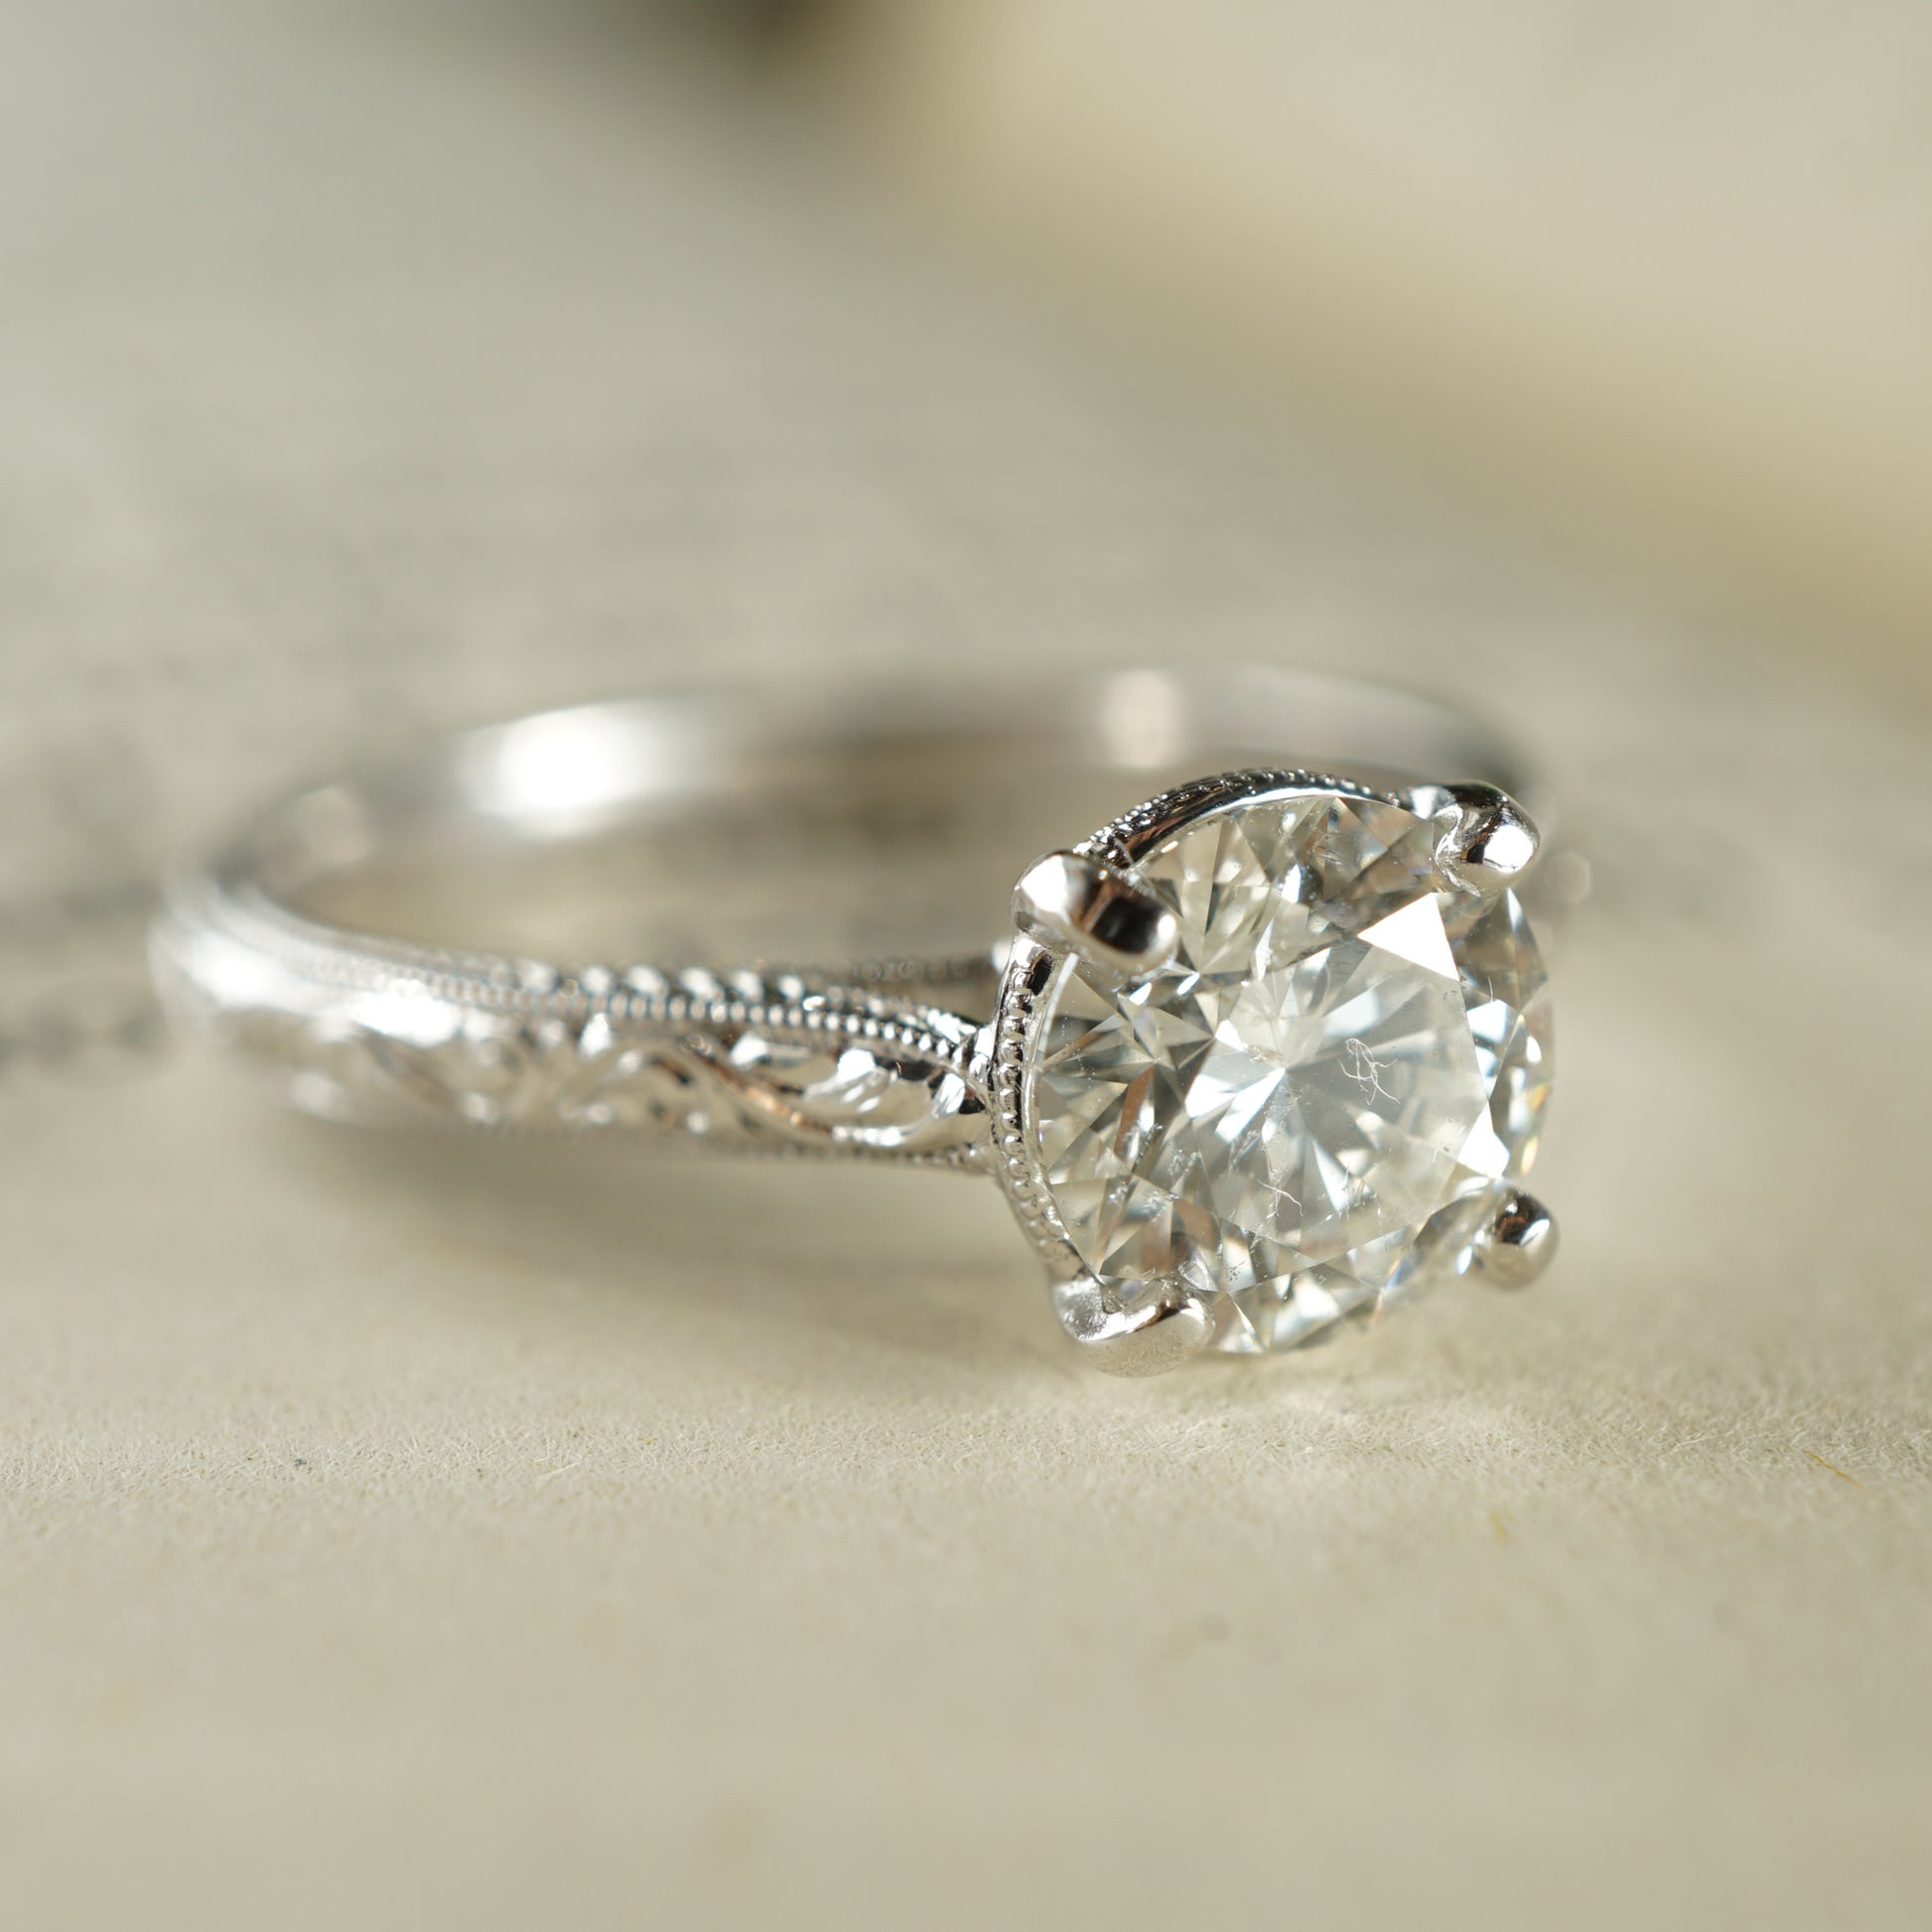 1.04 Art Deco Diamond Engagement Ring in 18K White Gold